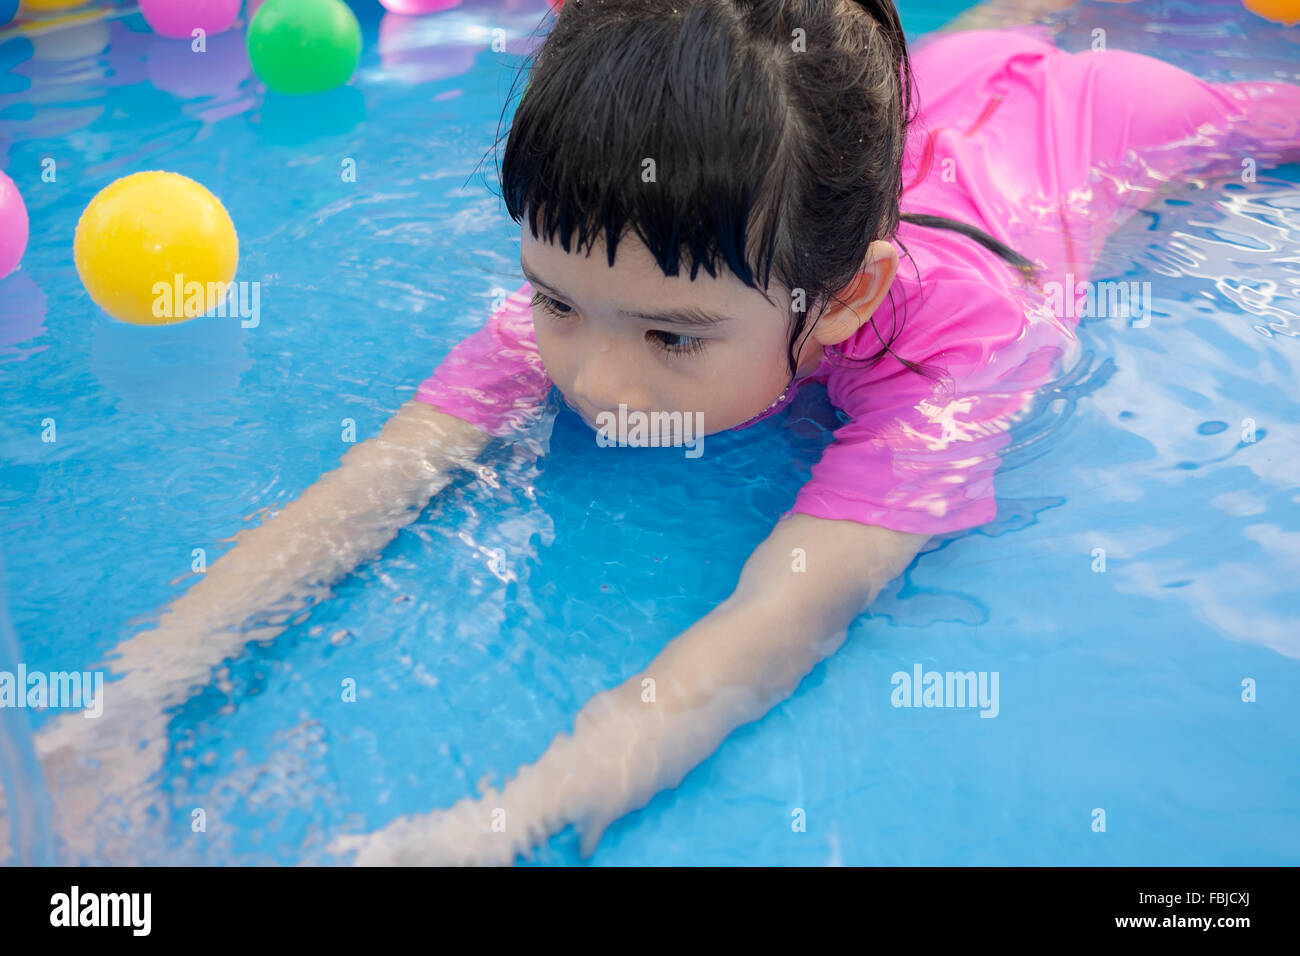 Ein kleines Mädchen in rosa Anzug spielt Wasser und Kugeln in blau Planschbecken Stockfoto